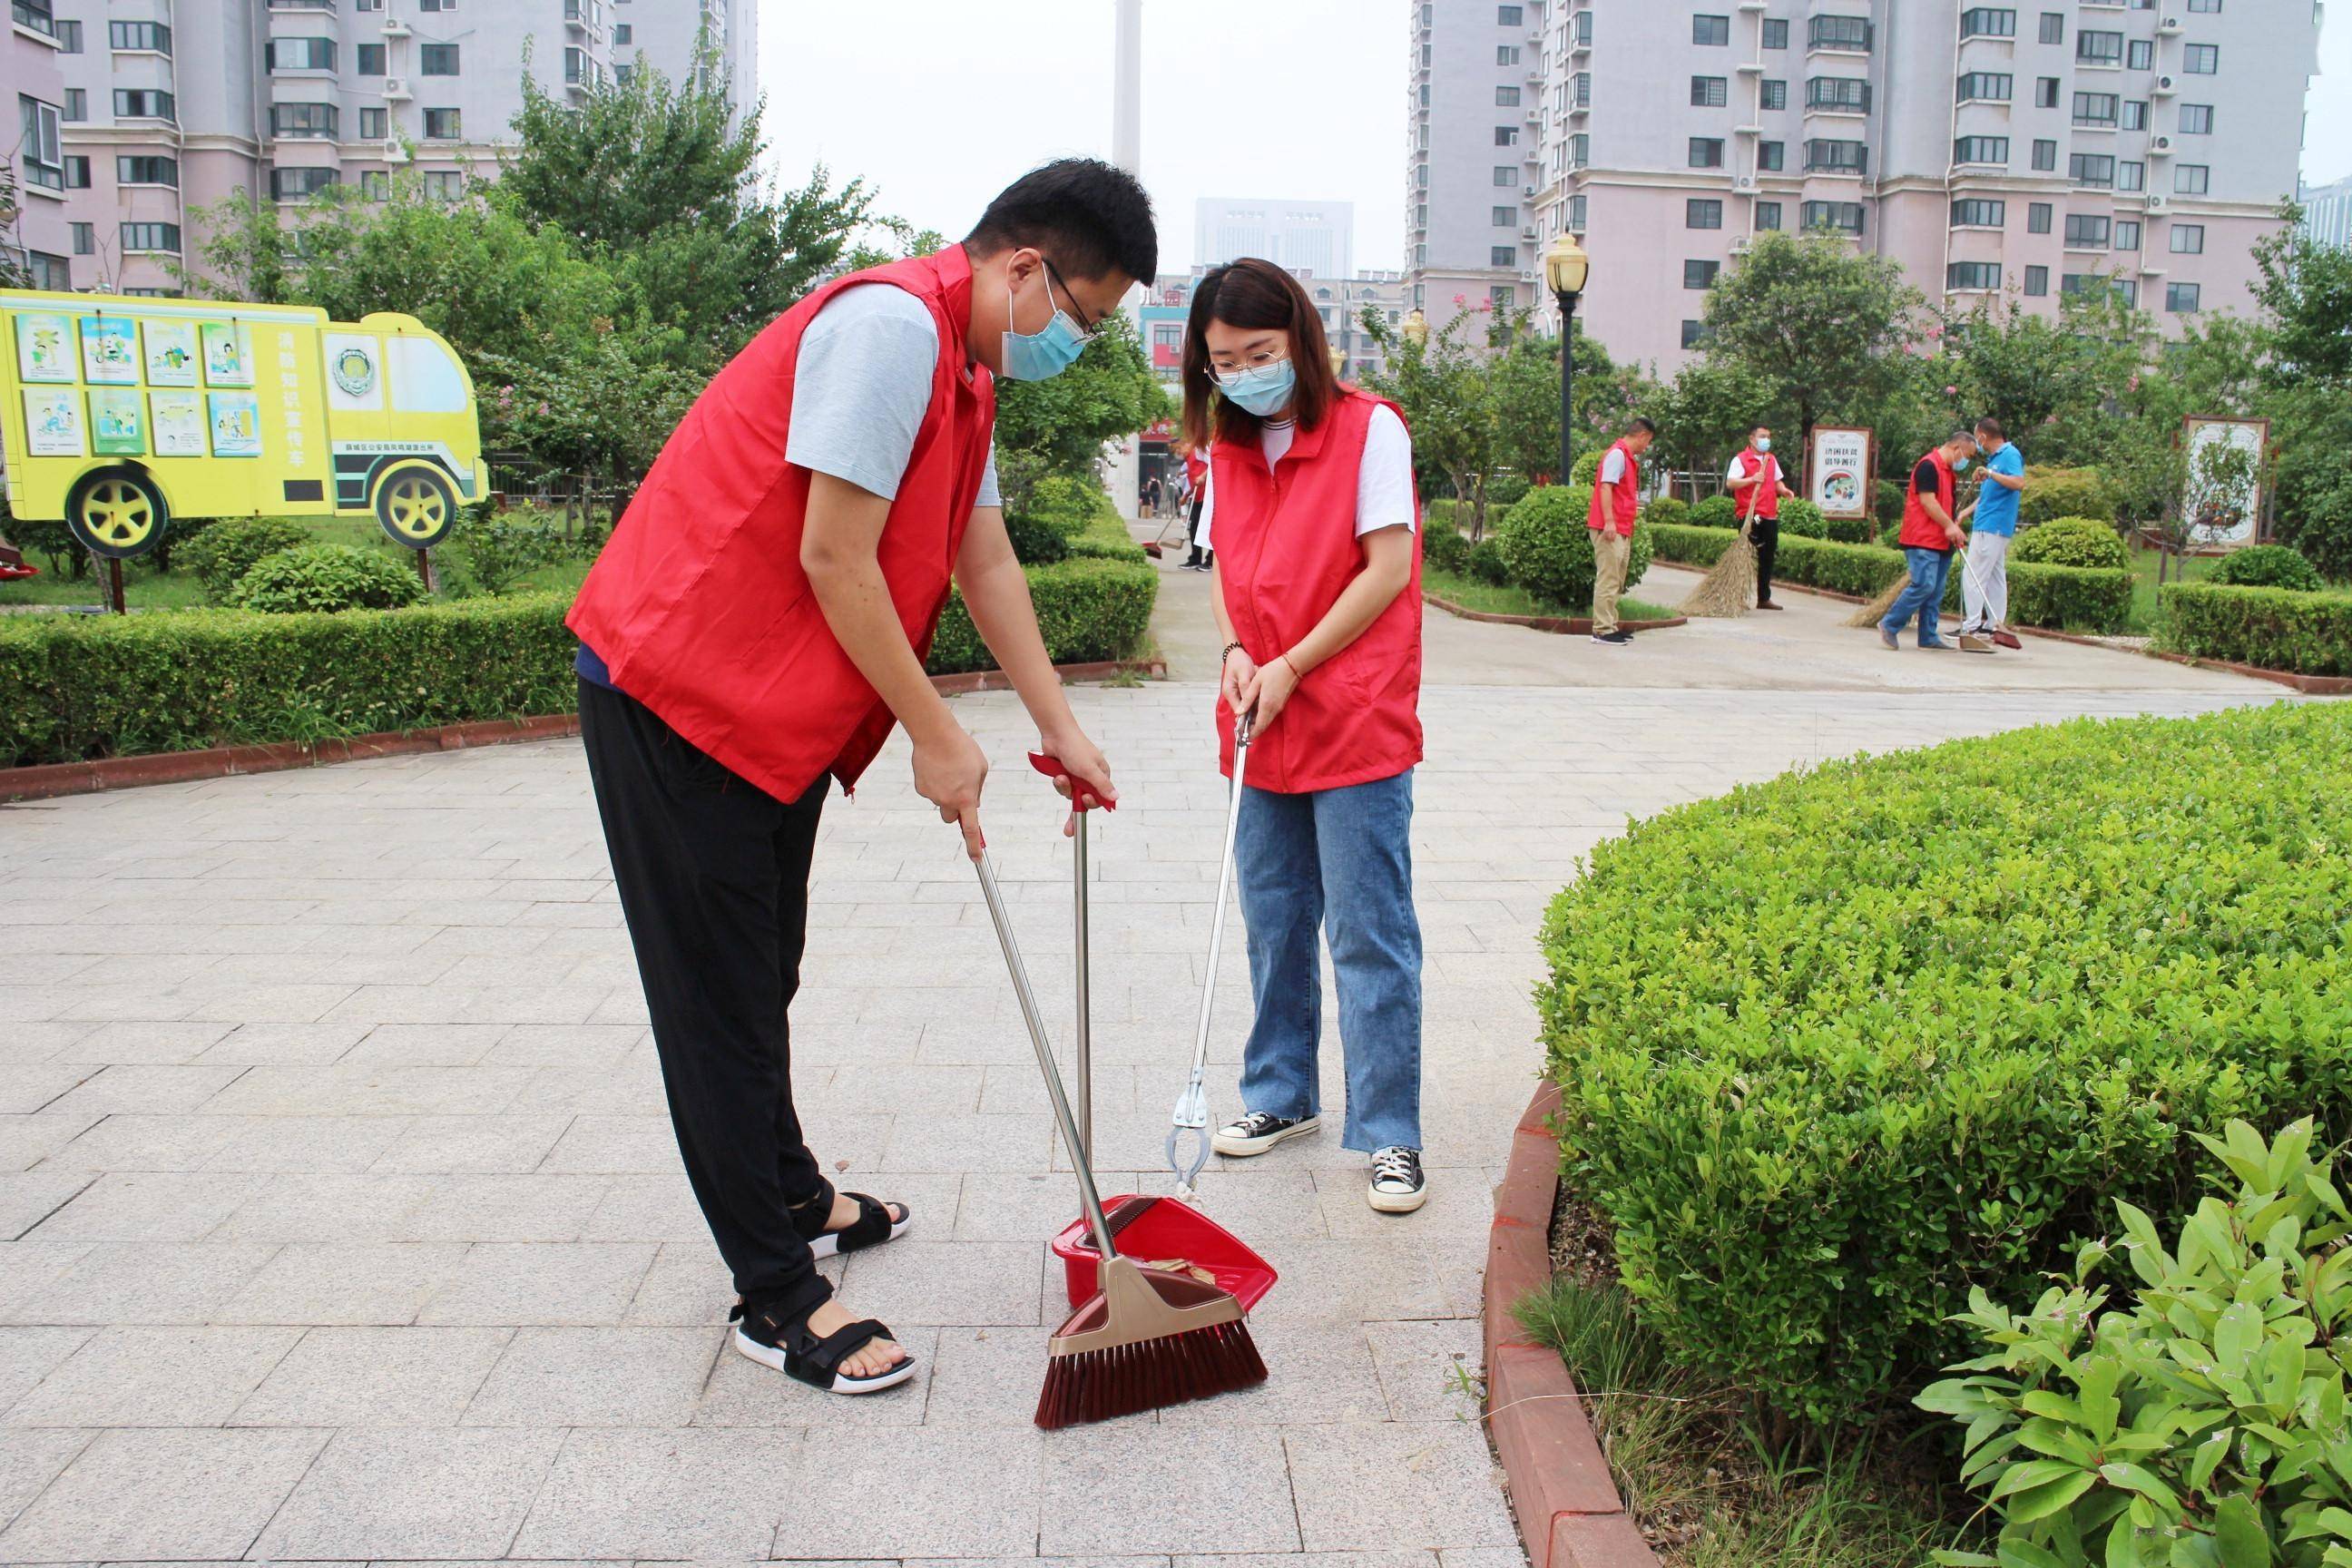 8月24日,枣庄市气象局组织党员志愿服务队,到昂立社区开展志愿服务